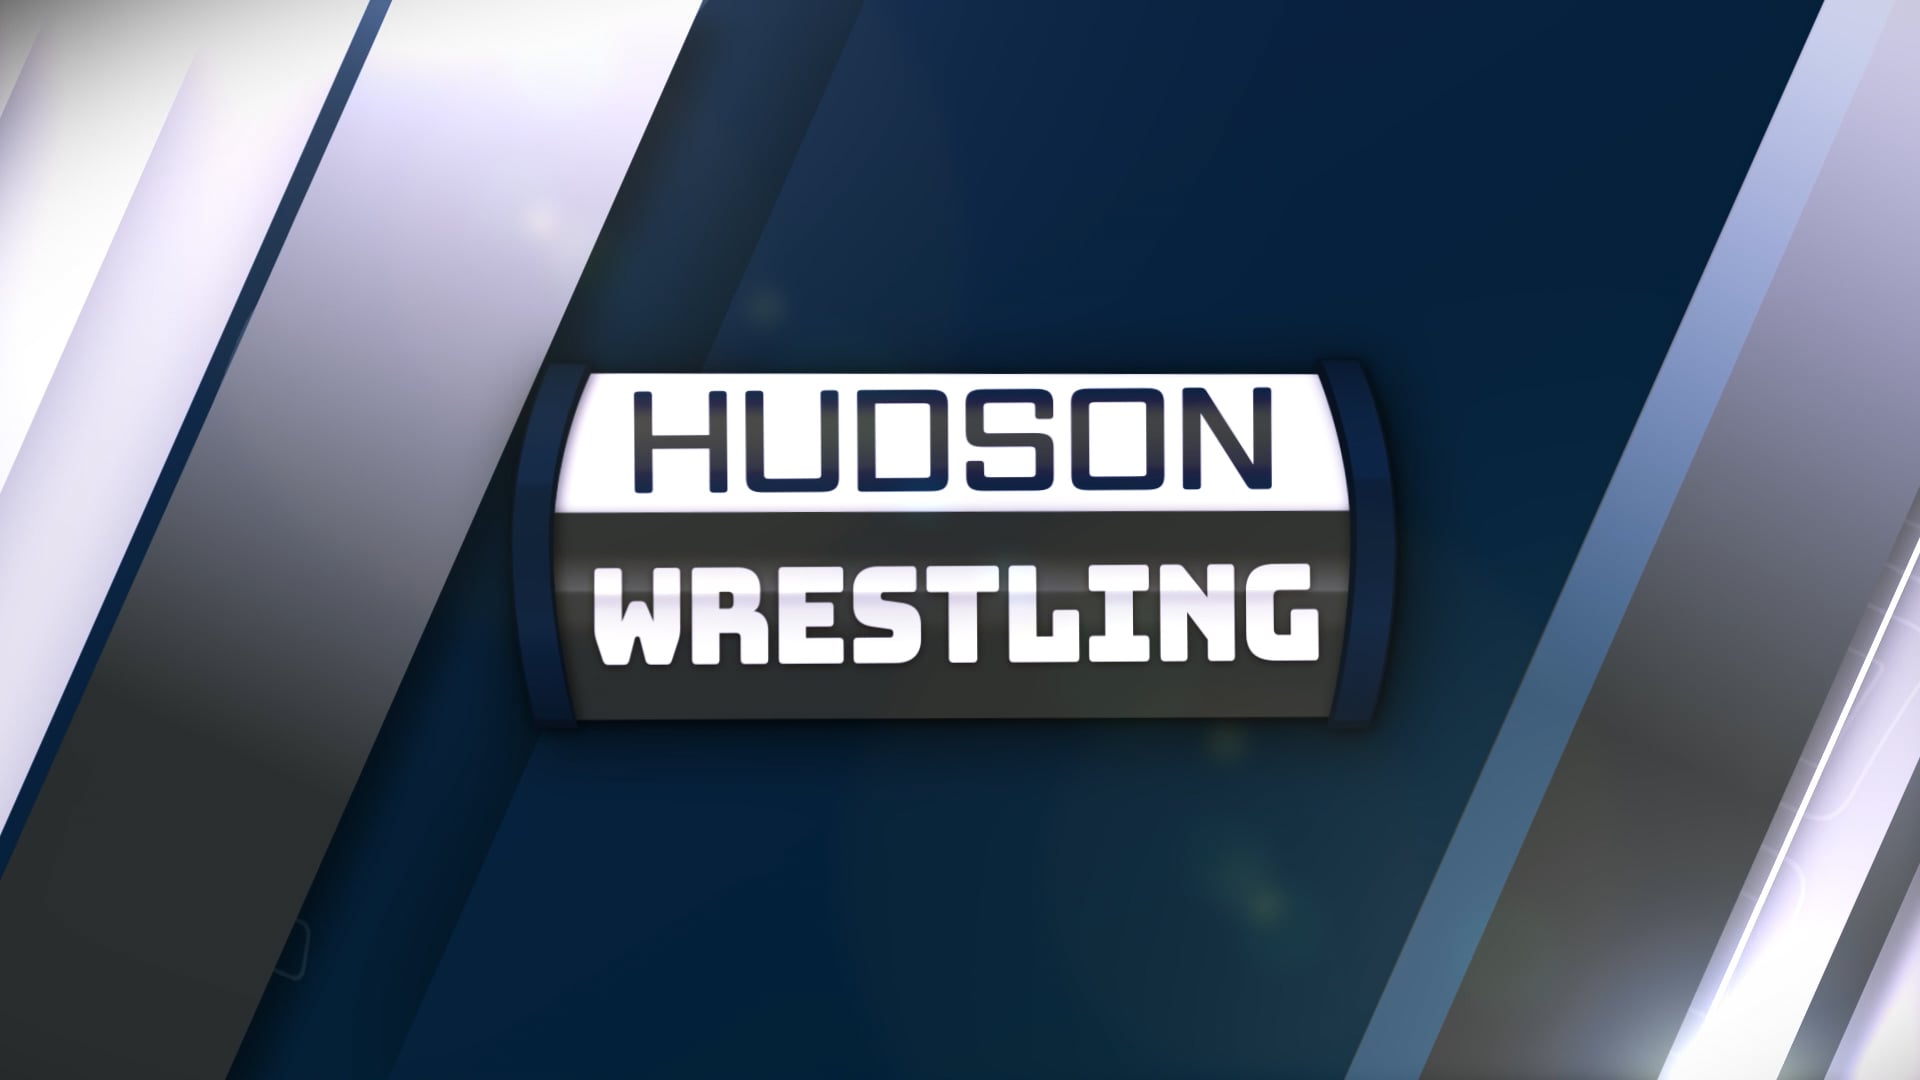 Hudson Wrestling - February 16, 2023